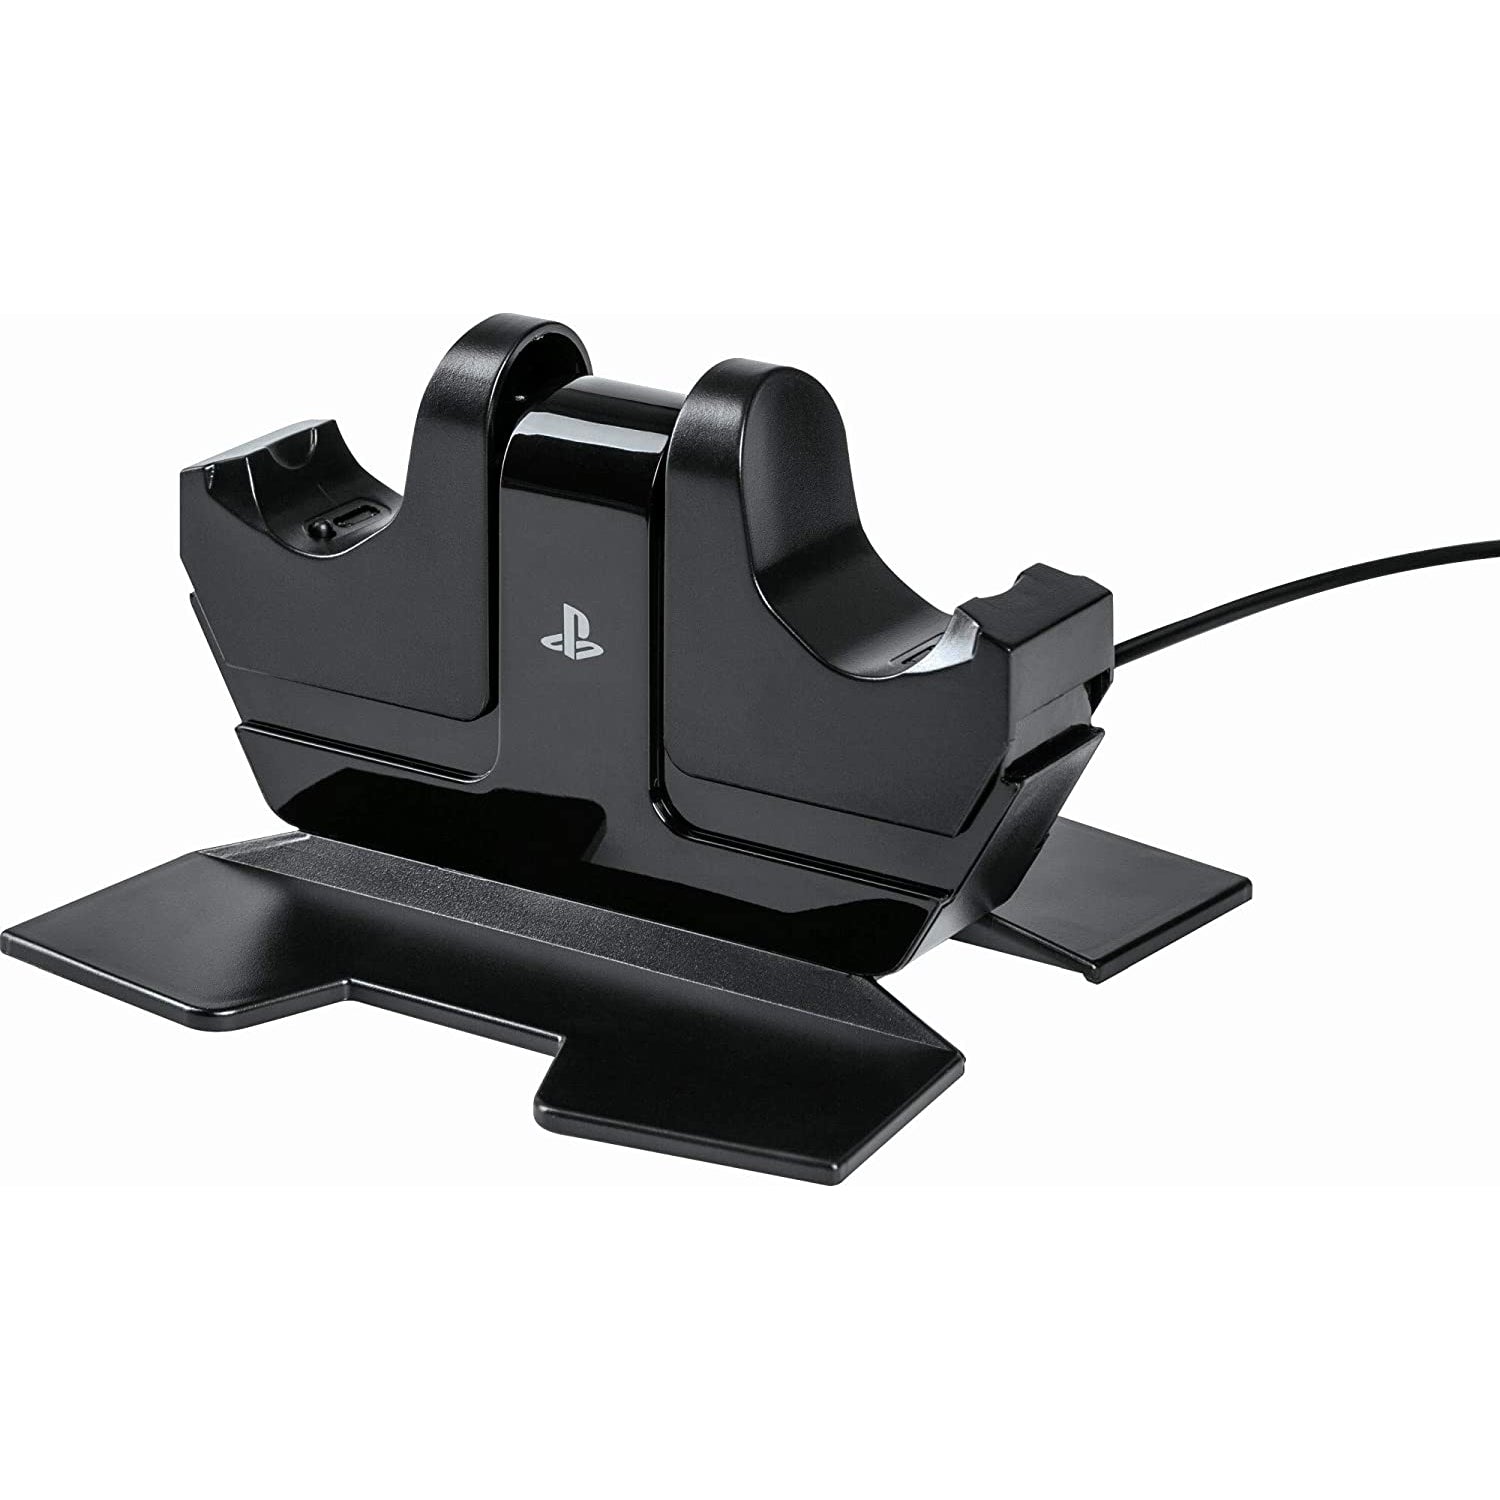 PowerA DualShock 4 Charging Dock (PS4) - Refurbished Good